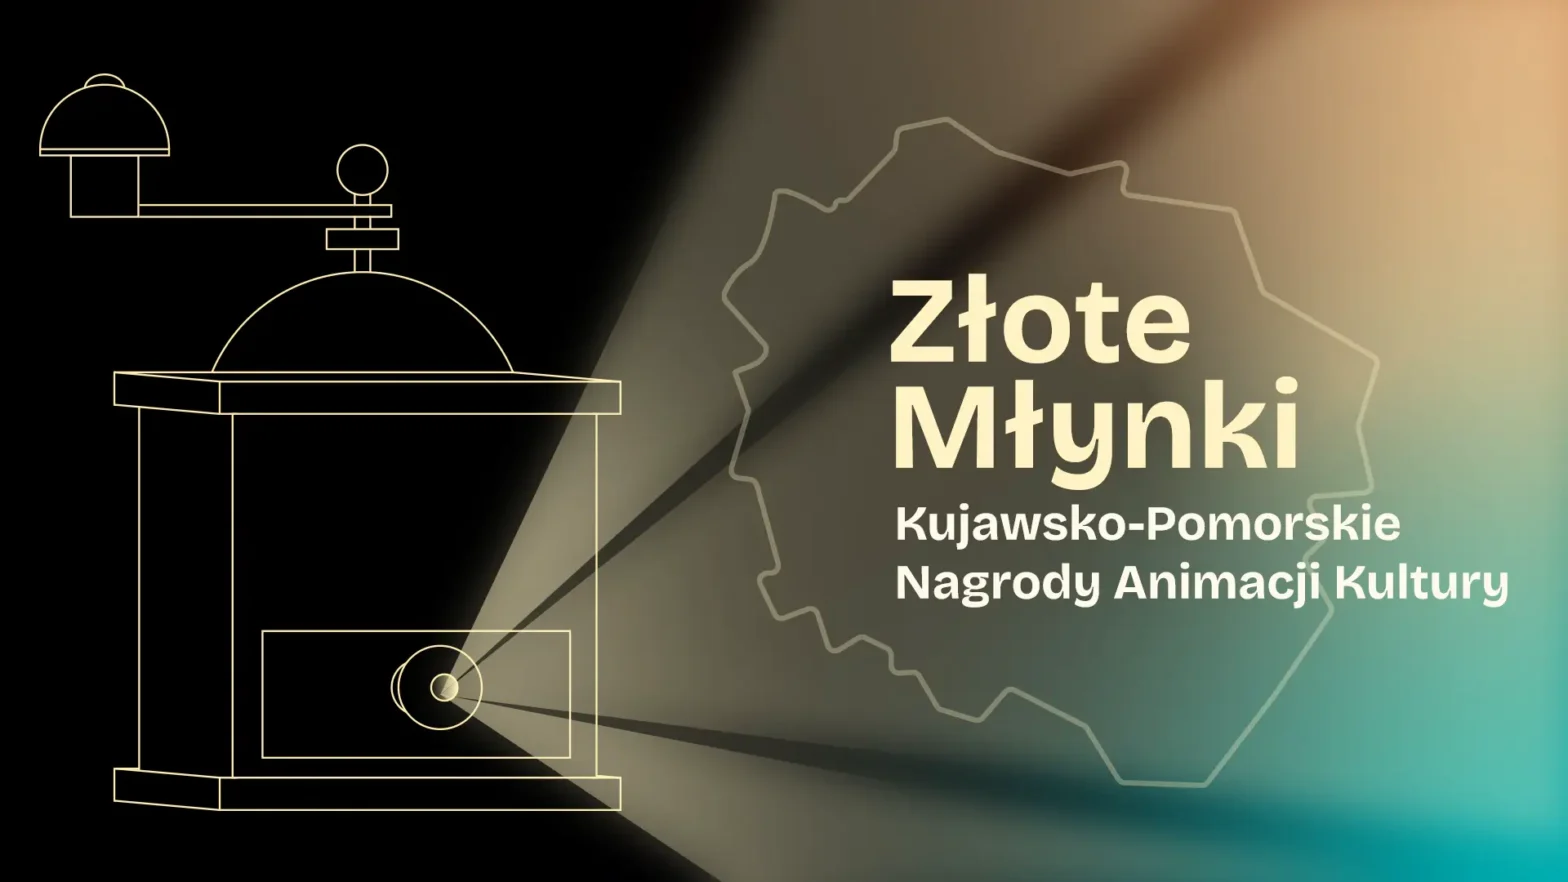 Grafika przedstawiająca nagrody Złote Młynki Kujawsko-Pomorskie Nagrody Animacji Kultury. Po lewej stronie znajdują się kontury młynka, a po prawej napis Złote Młynki Kujawsko-Pomorskie Nagrody Animacji Kultury na tle konturu województwa kujawsko-pomorskiego.